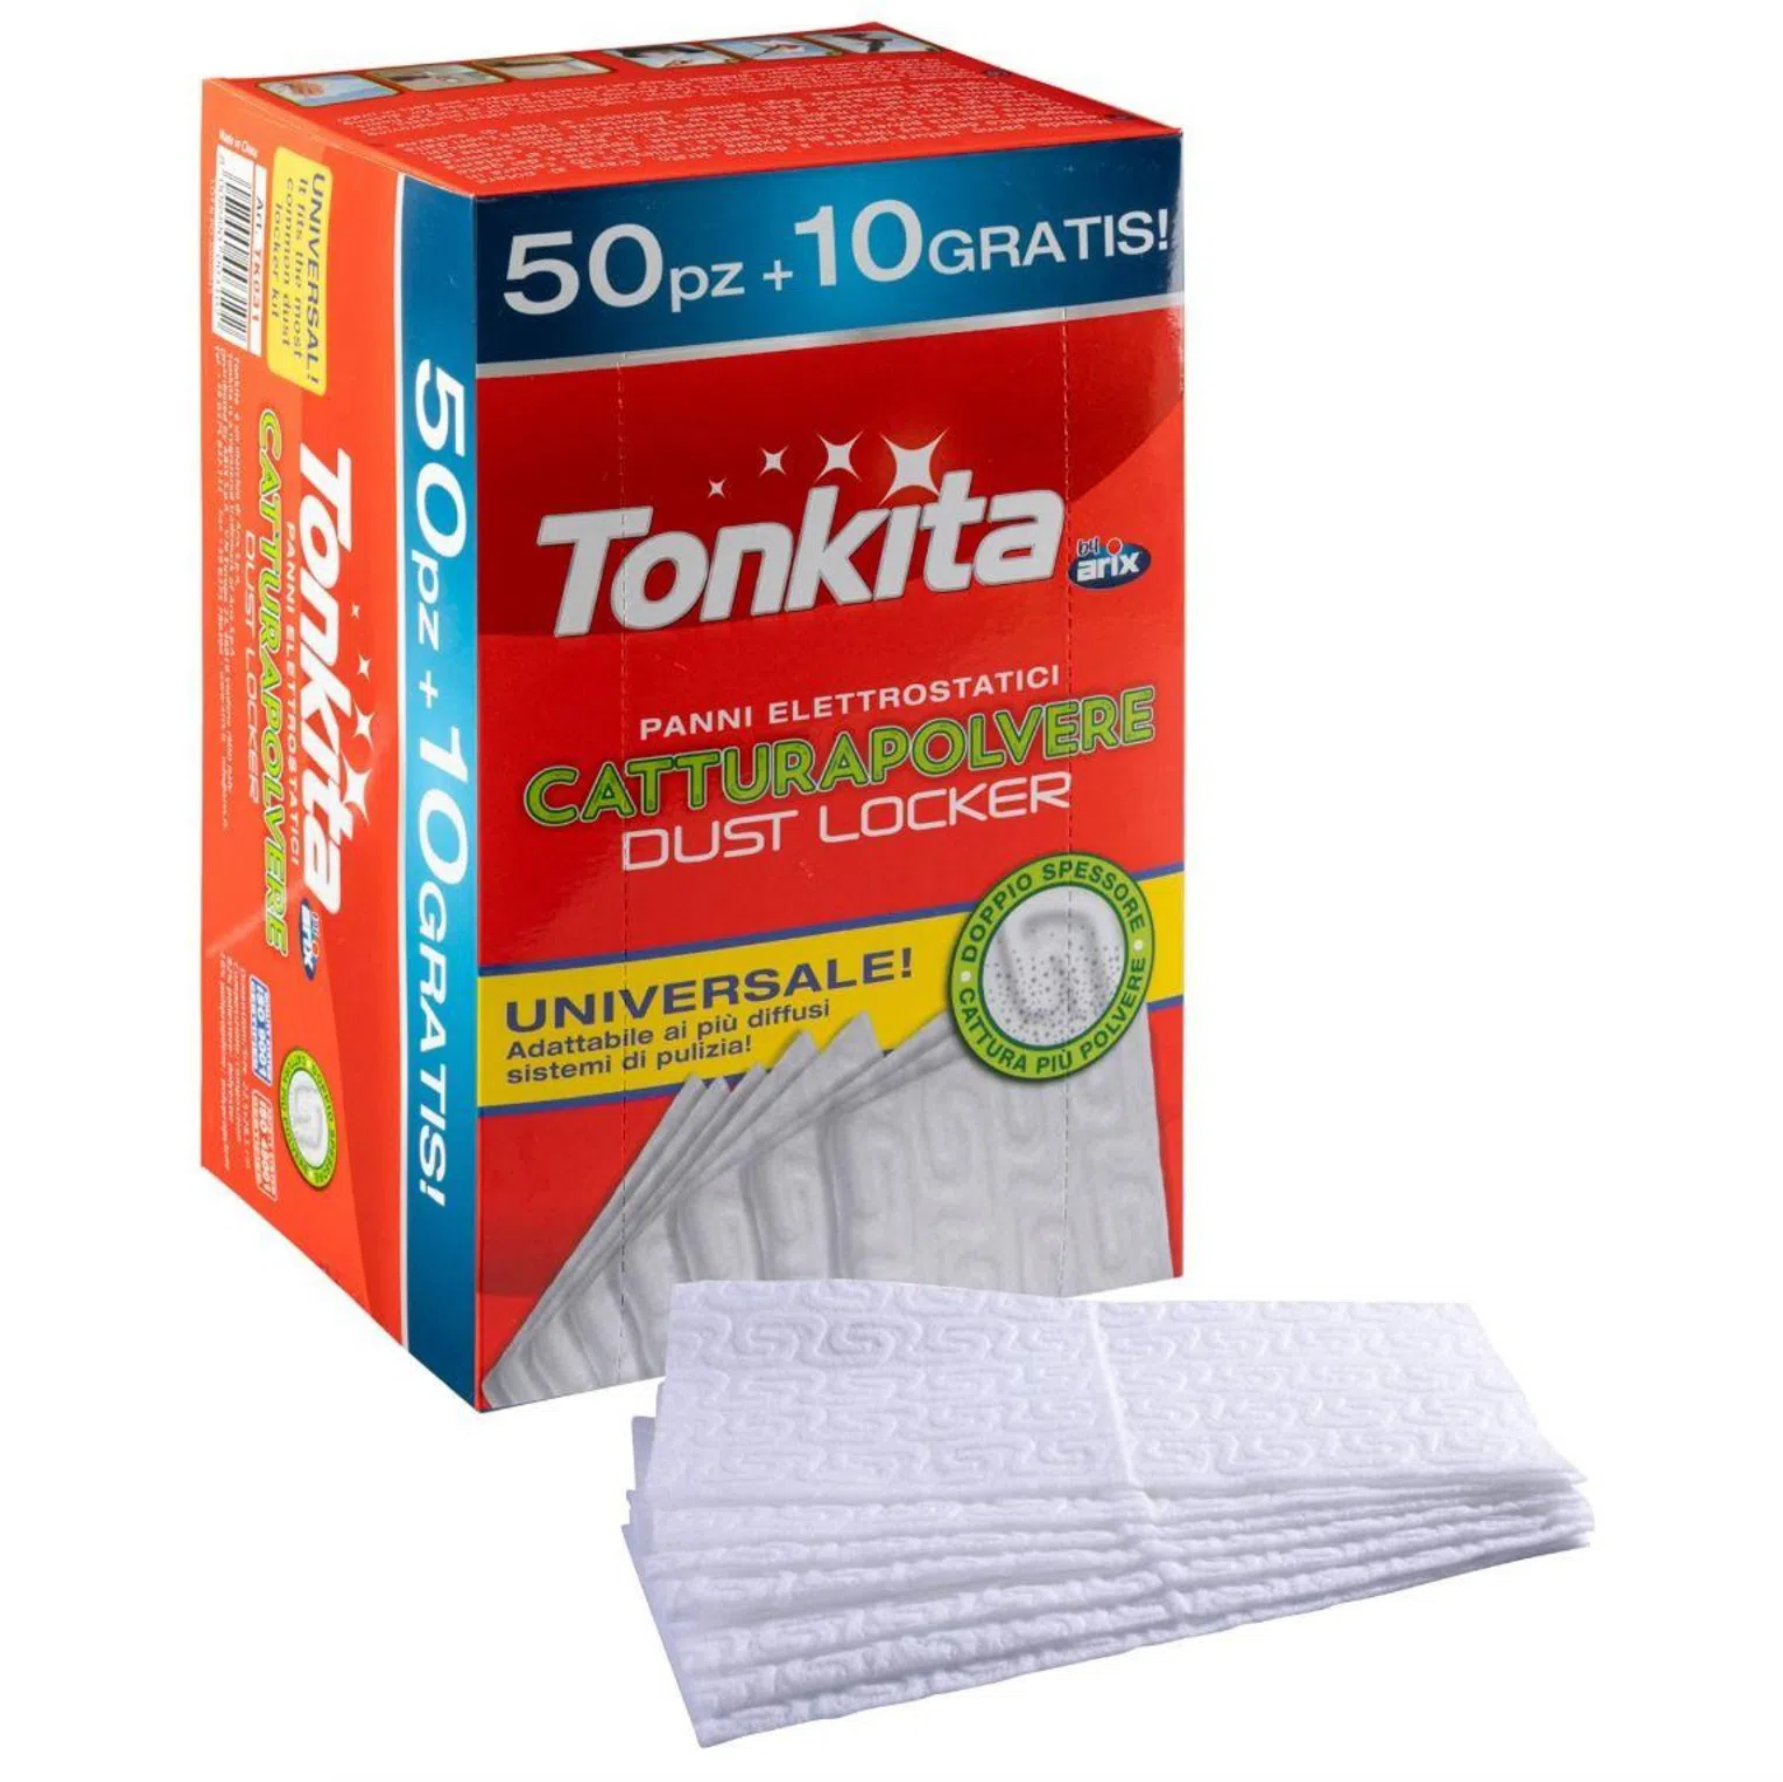 ARIX TONKITA Dust Locker Cloth REFILL 50PC PLUS 10PC SET TK031